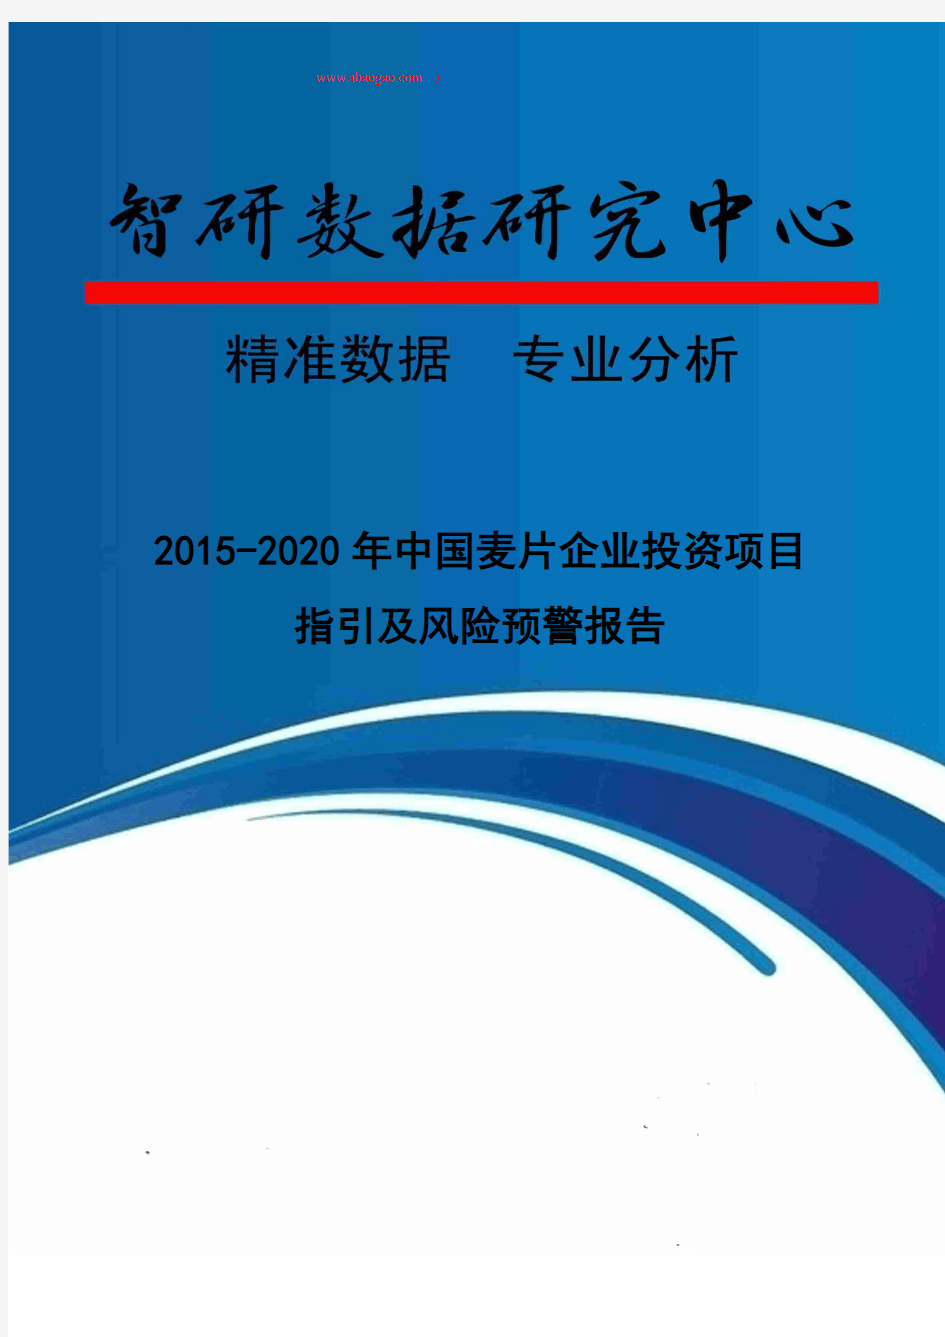 2015-2020年中国麦片企业投资项目指引及风险预警报告